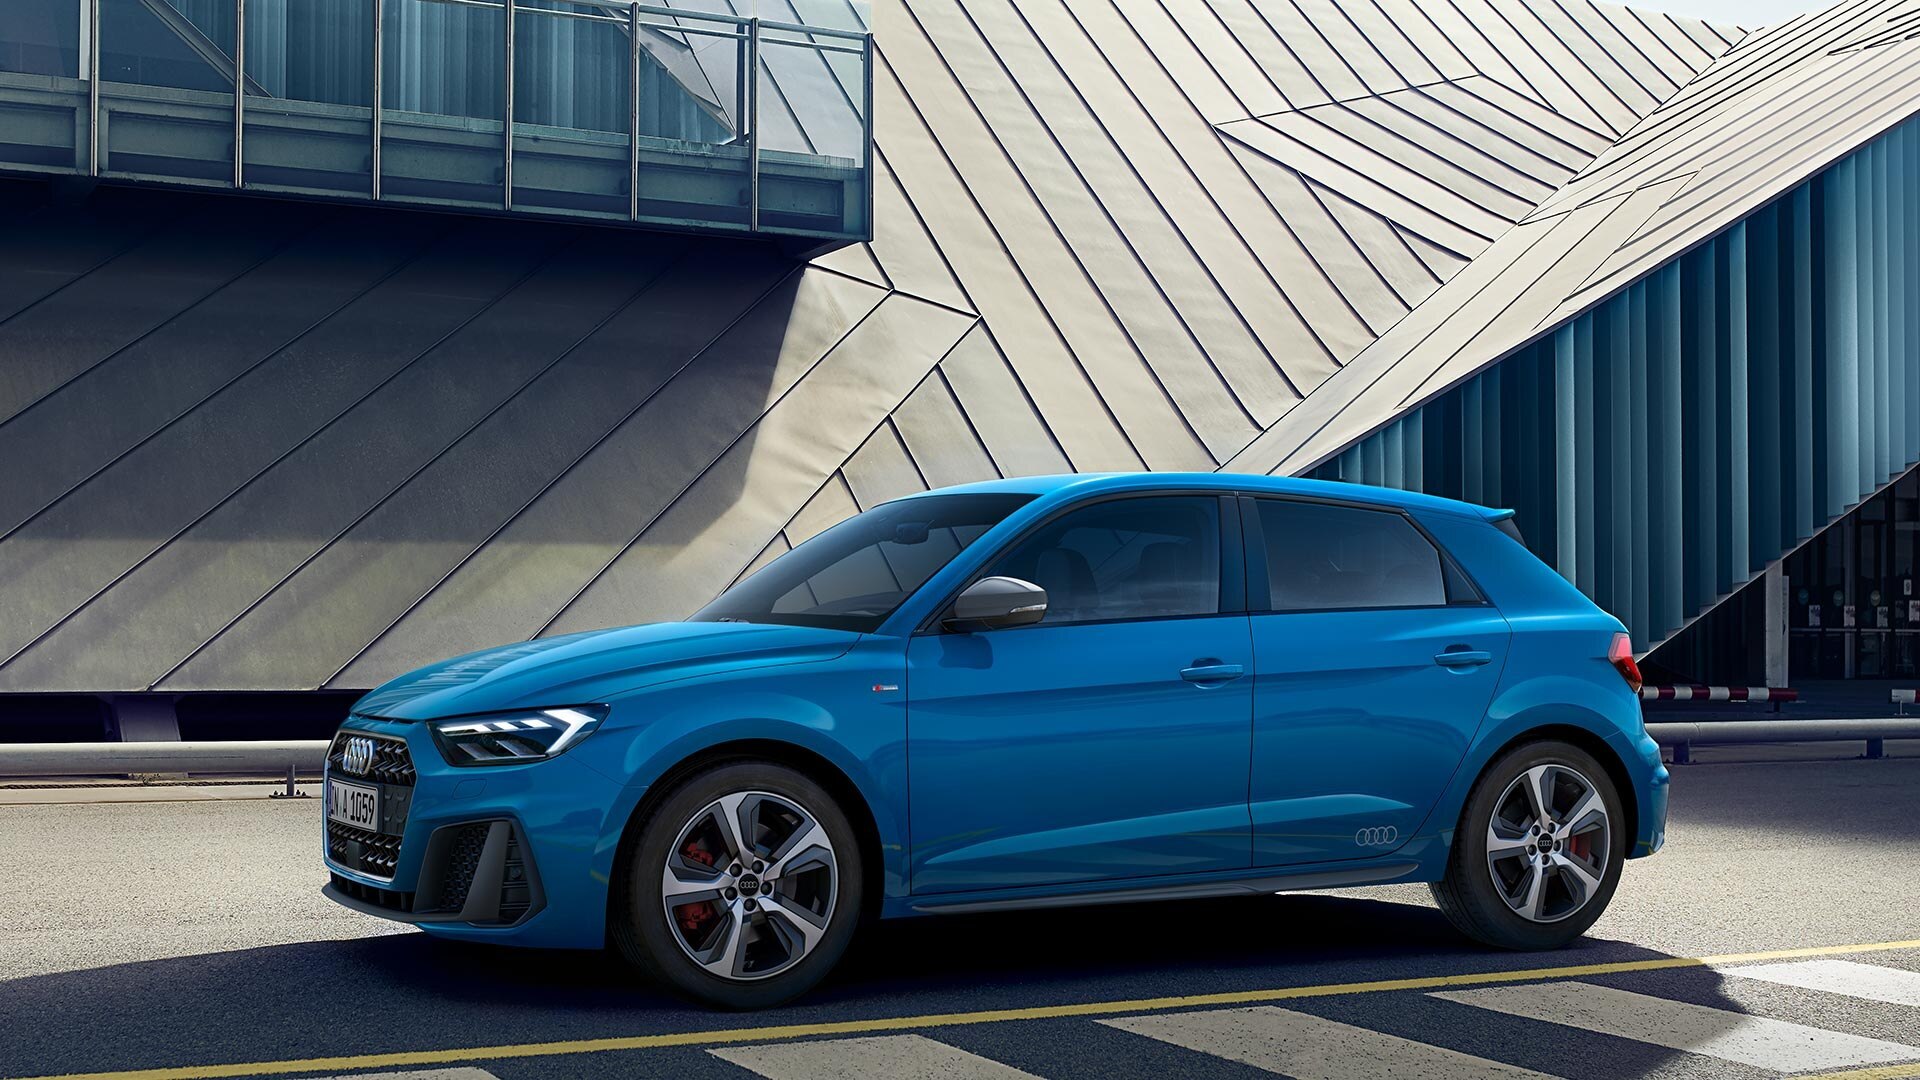 Audi A1 in blau